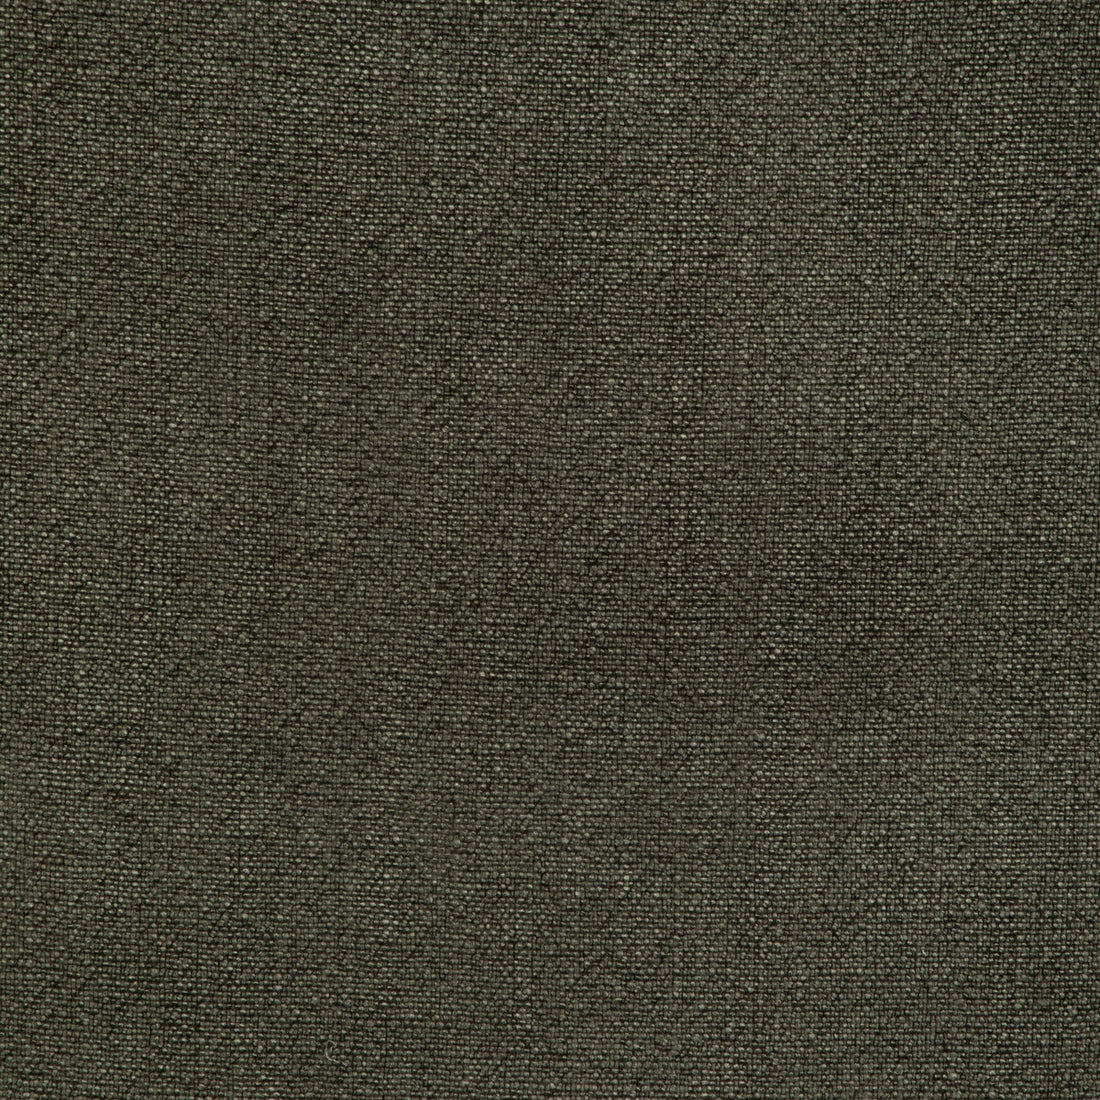 Kravet Basics fabric in 35189-311 color - pattern 35189.311.0 - by Kravet Basics